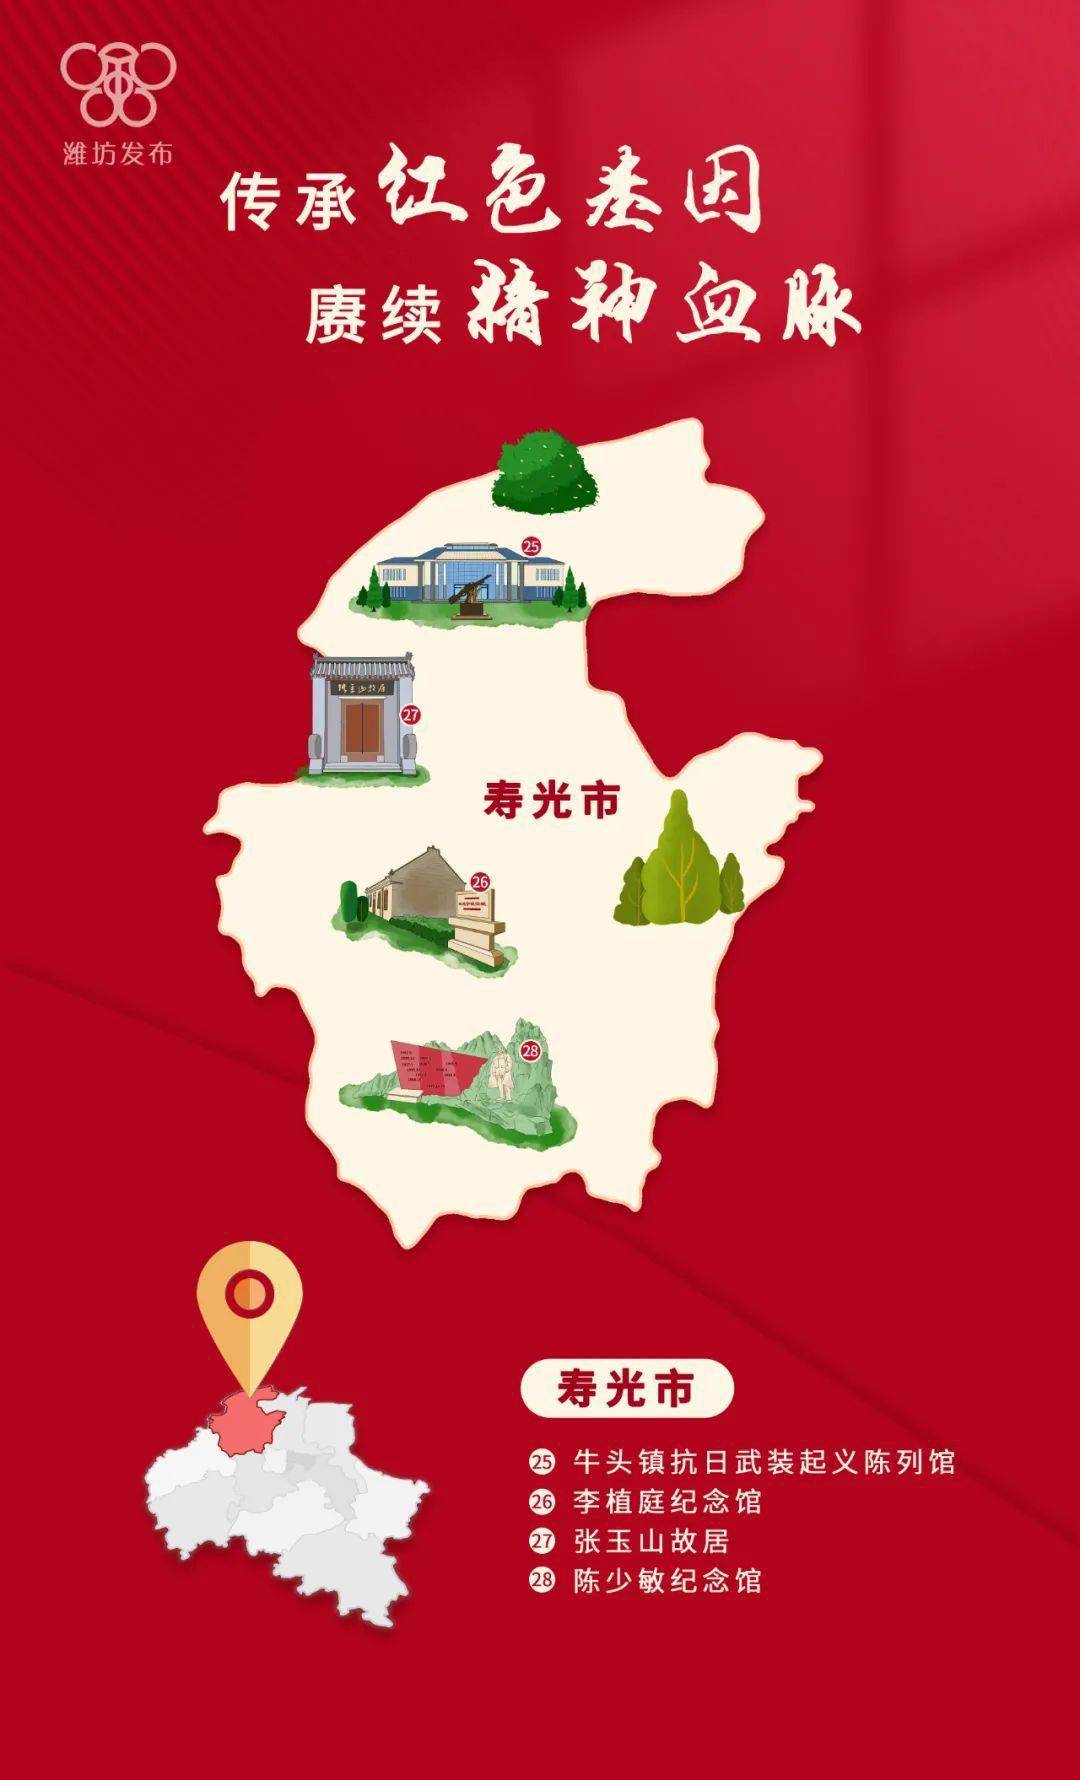 已公布为革命文物的有103处 这份潍坊"红色地图" 收录了每一个县市区